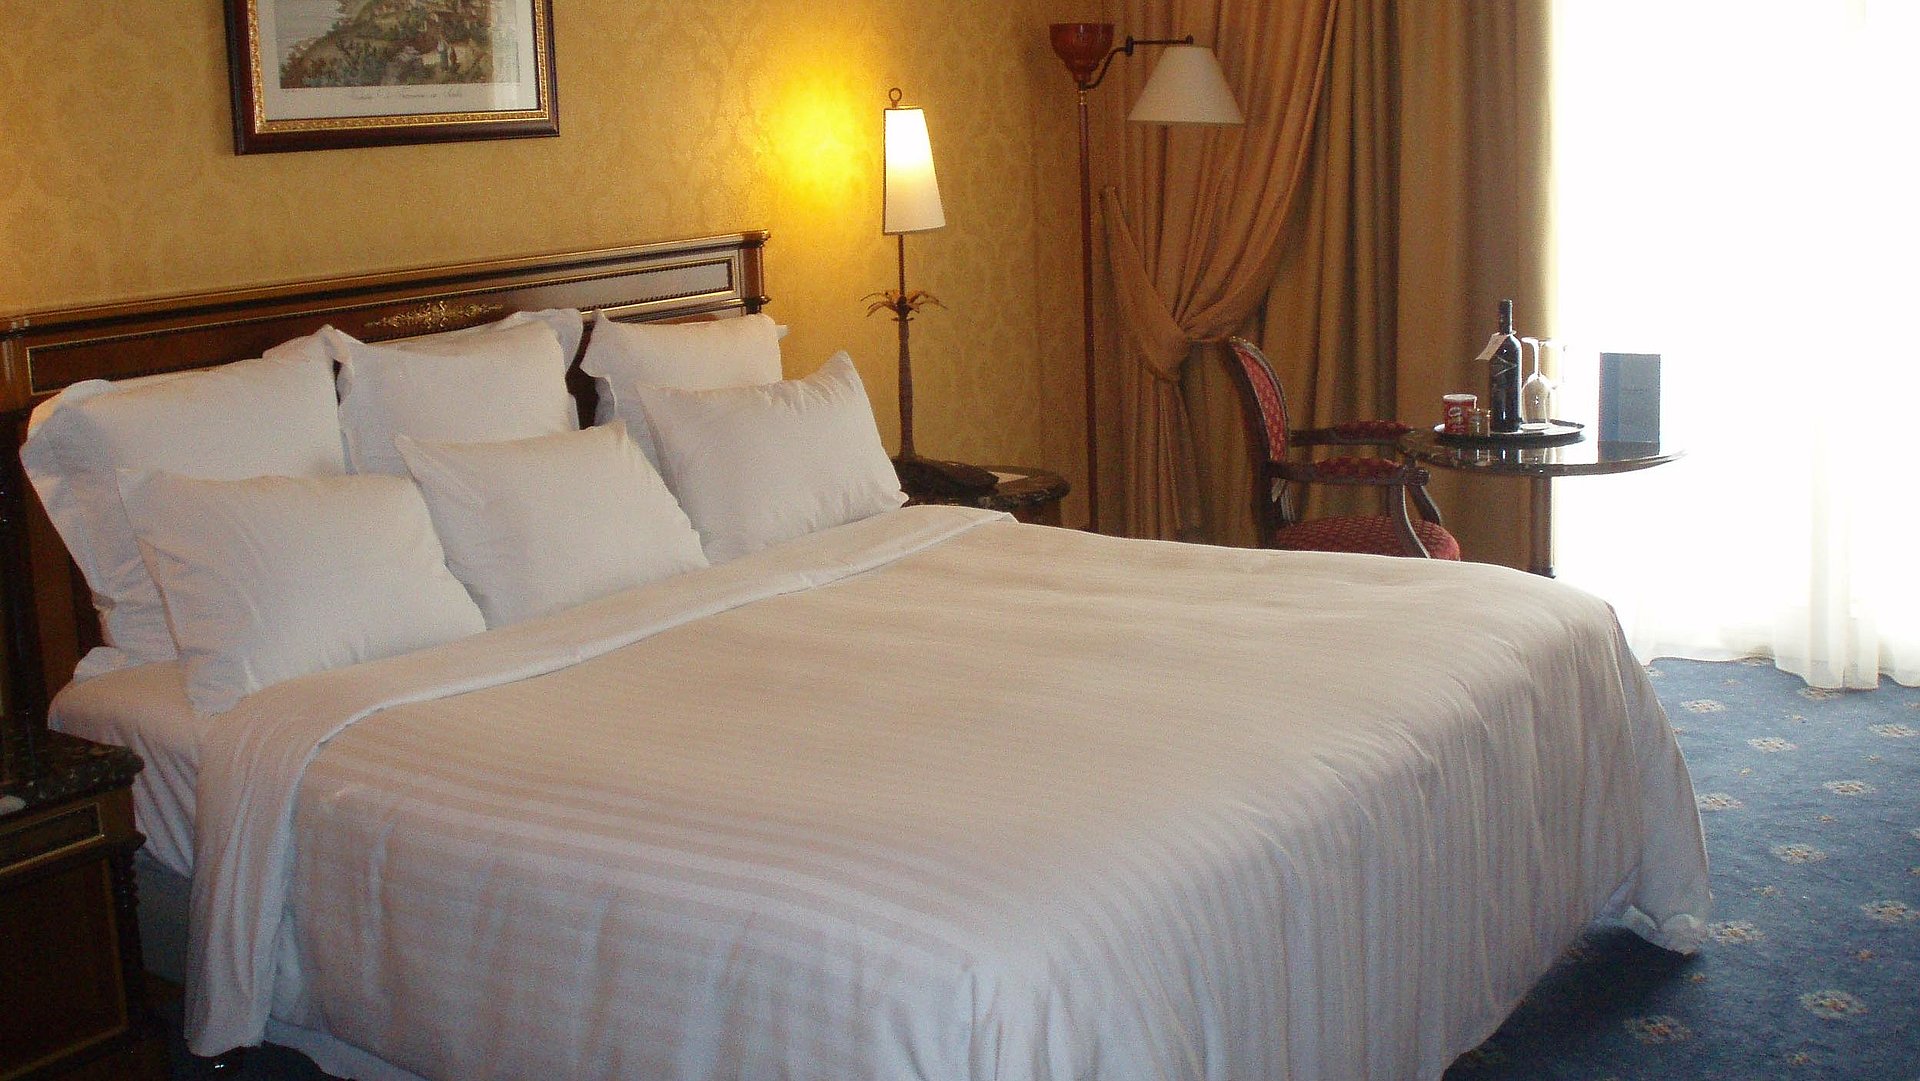 Pauschalen während der Woche in Oberbayern - sehr ordentliches Hotelzimmer mit großem Bett, warmer Nachtlampe und mittelgroßem Wandgemälde 